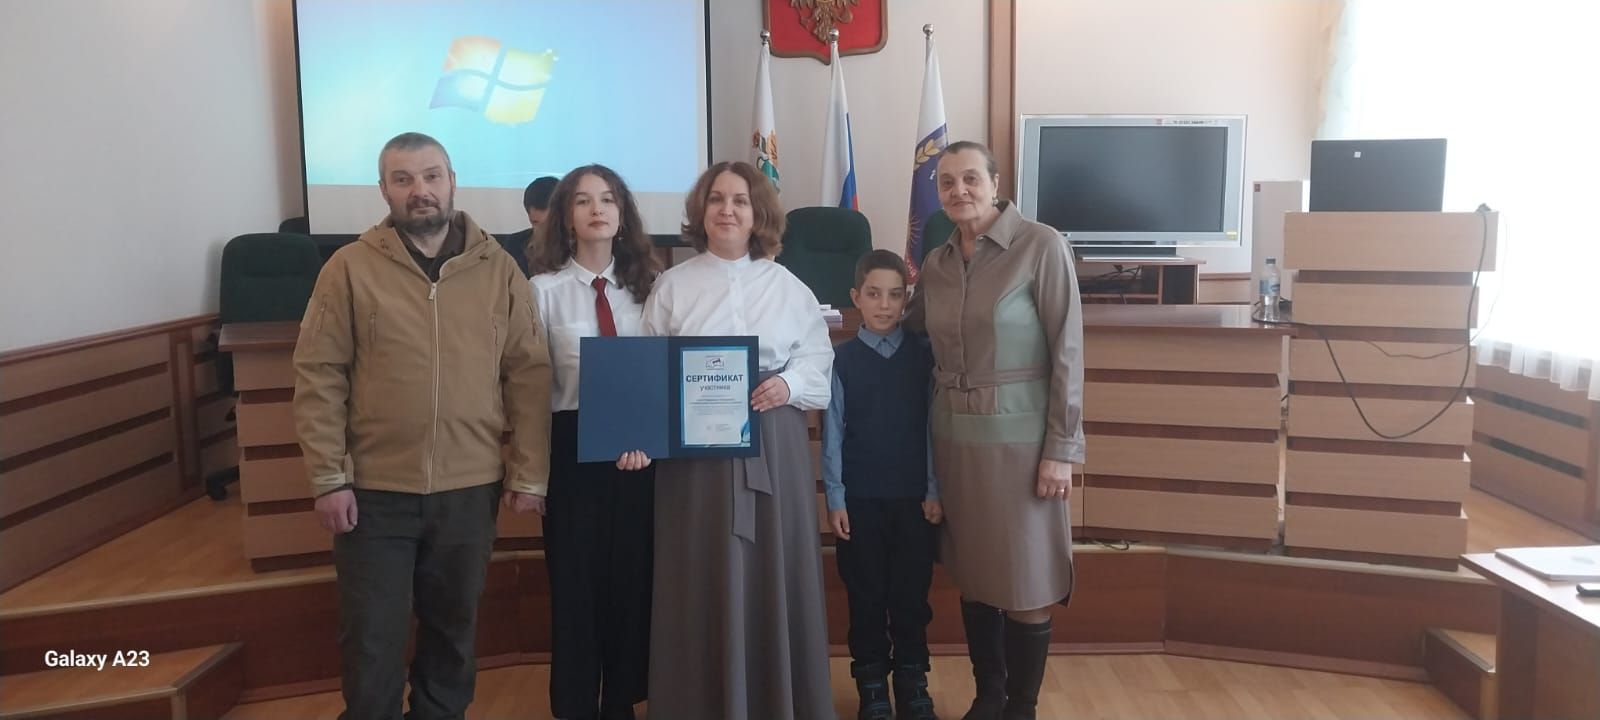 Вручение сертификата участника областного конкурса «Читаем всей семьей»